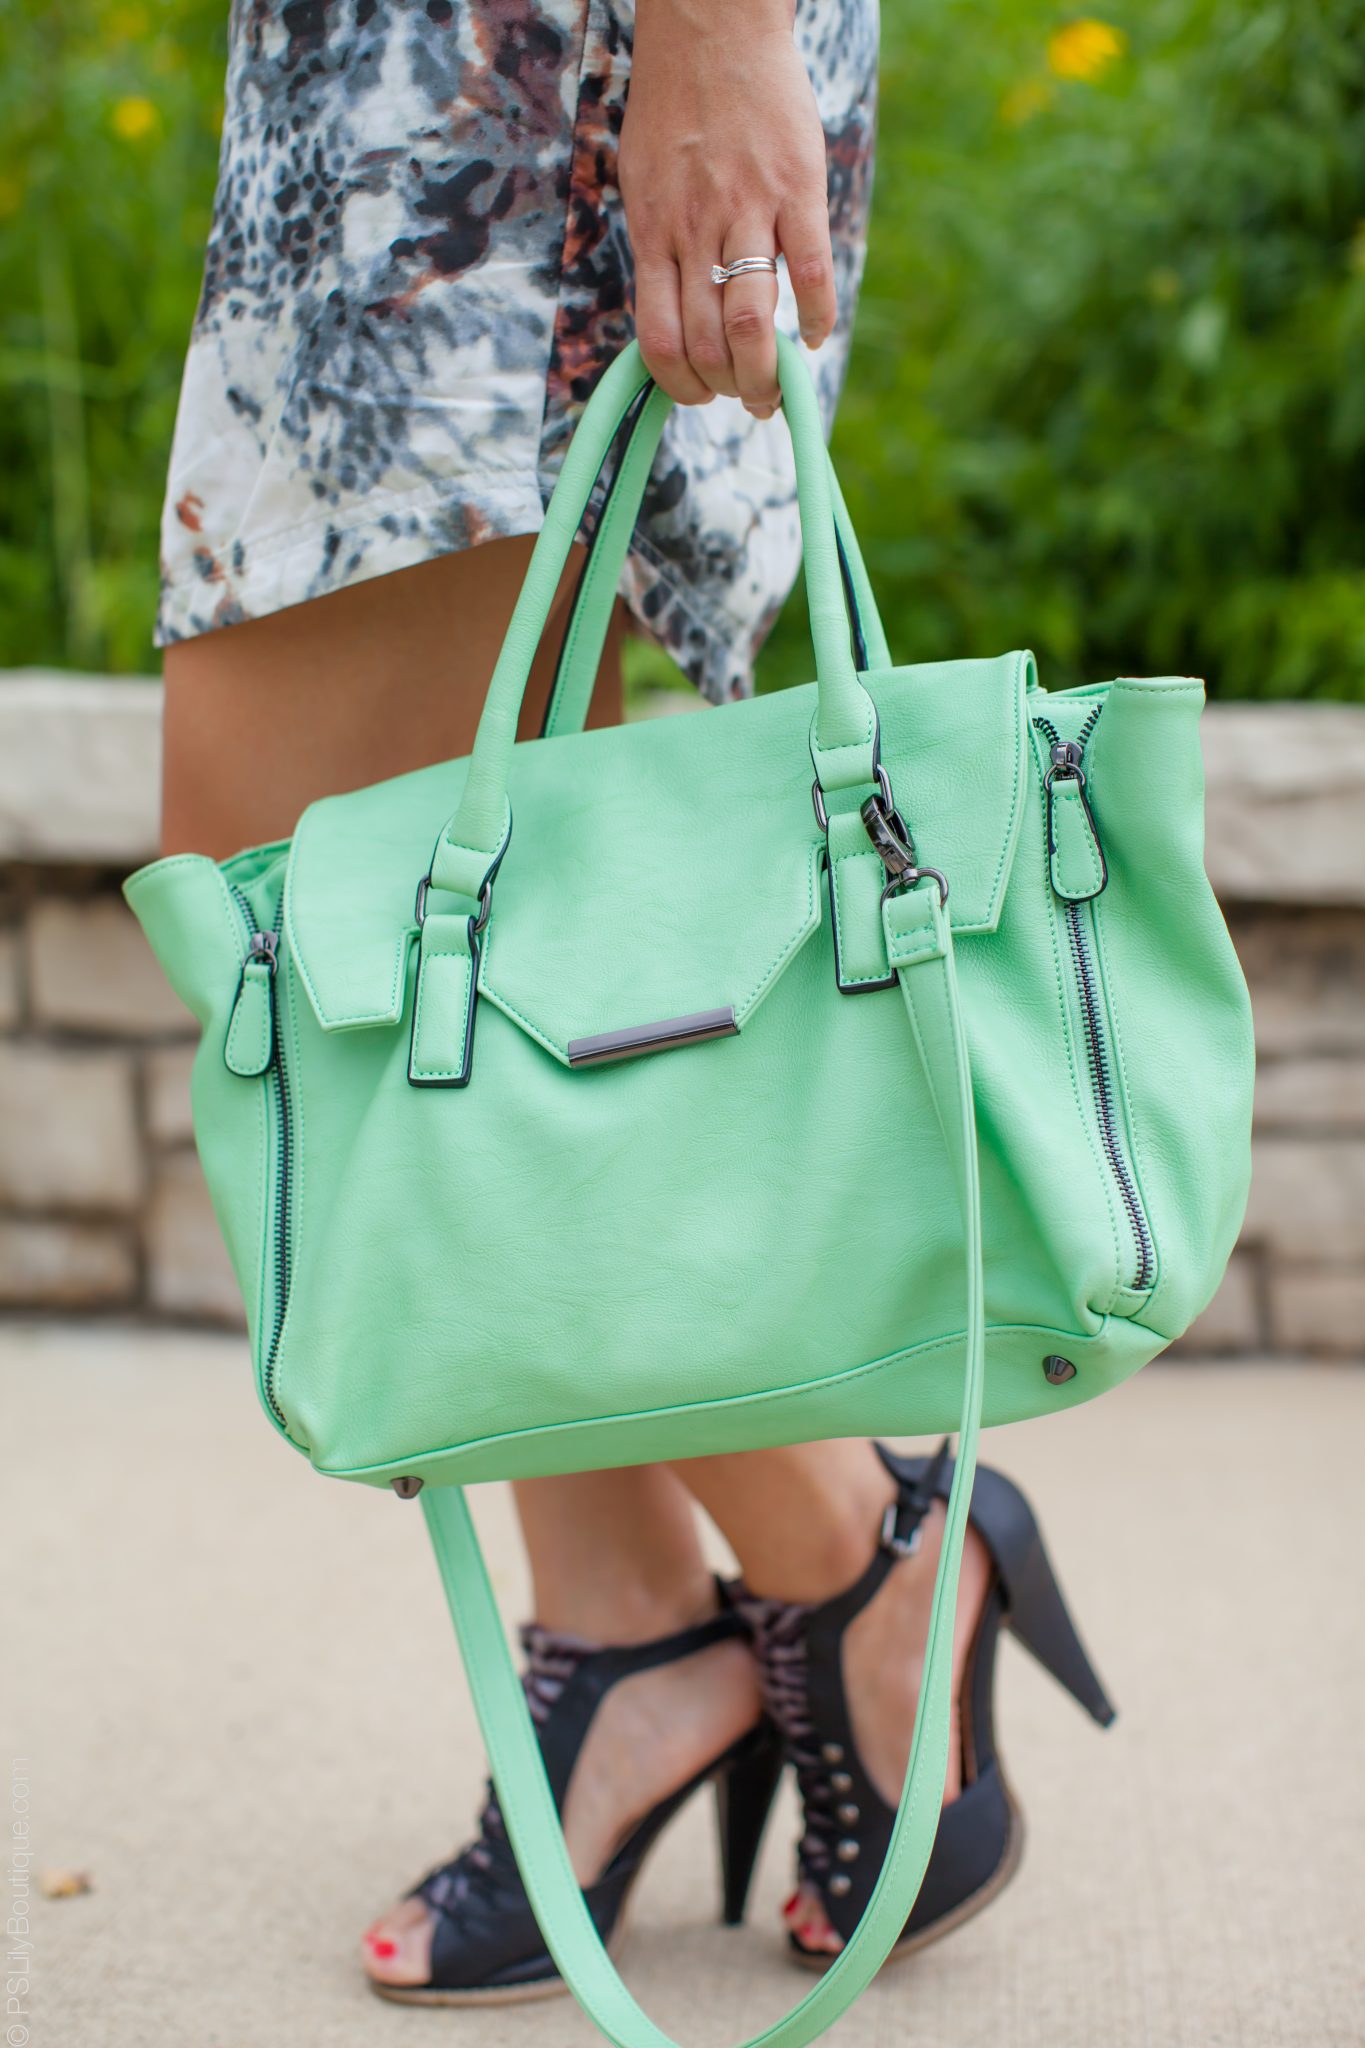 instagram-pslilyboutique-mint-green-nordstrom-expressions-nyc-satchel-shoulder-bag-08